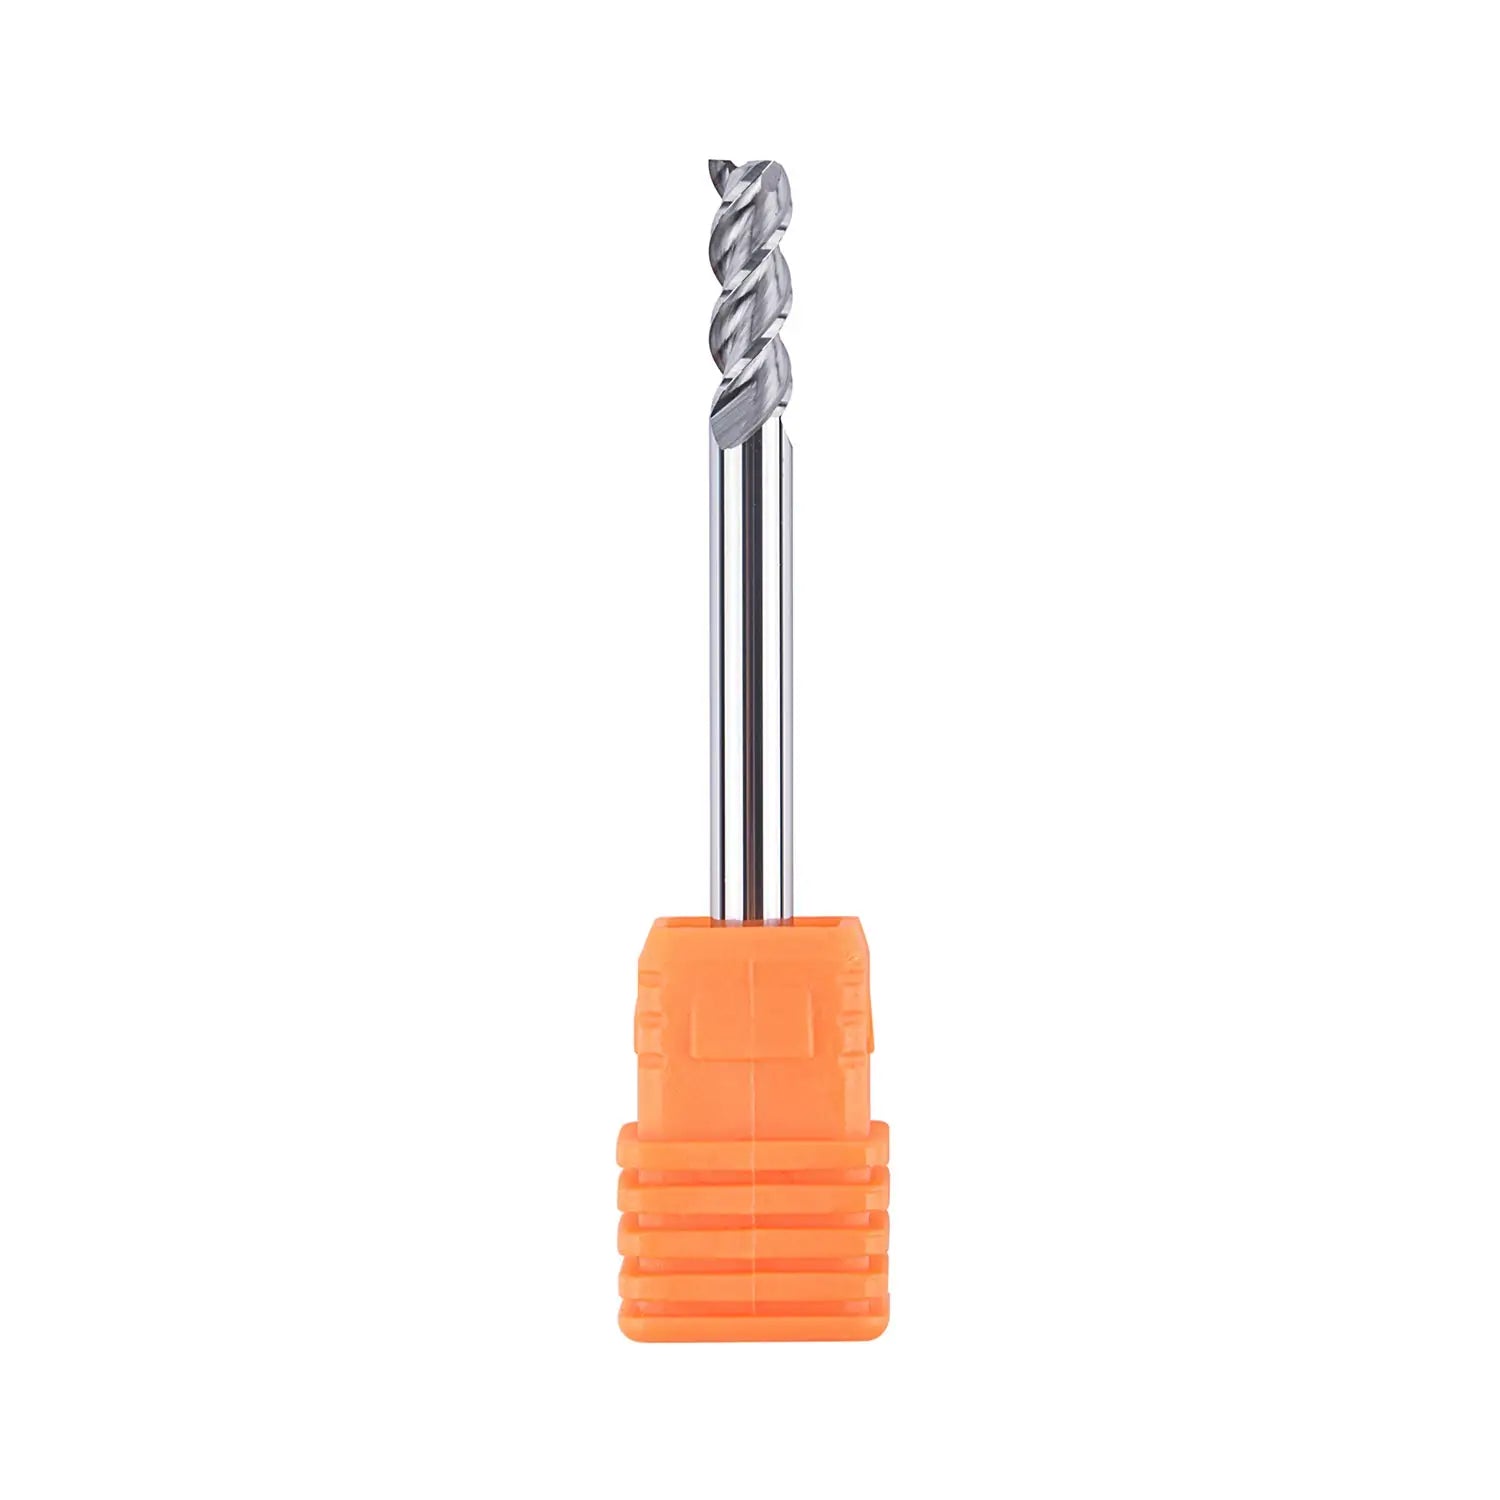 SpeTool EU 3 Flutes Square Twist Cutter CNC Tool 4mm Shank Diameter 4mm Cut 4mm x 12mm